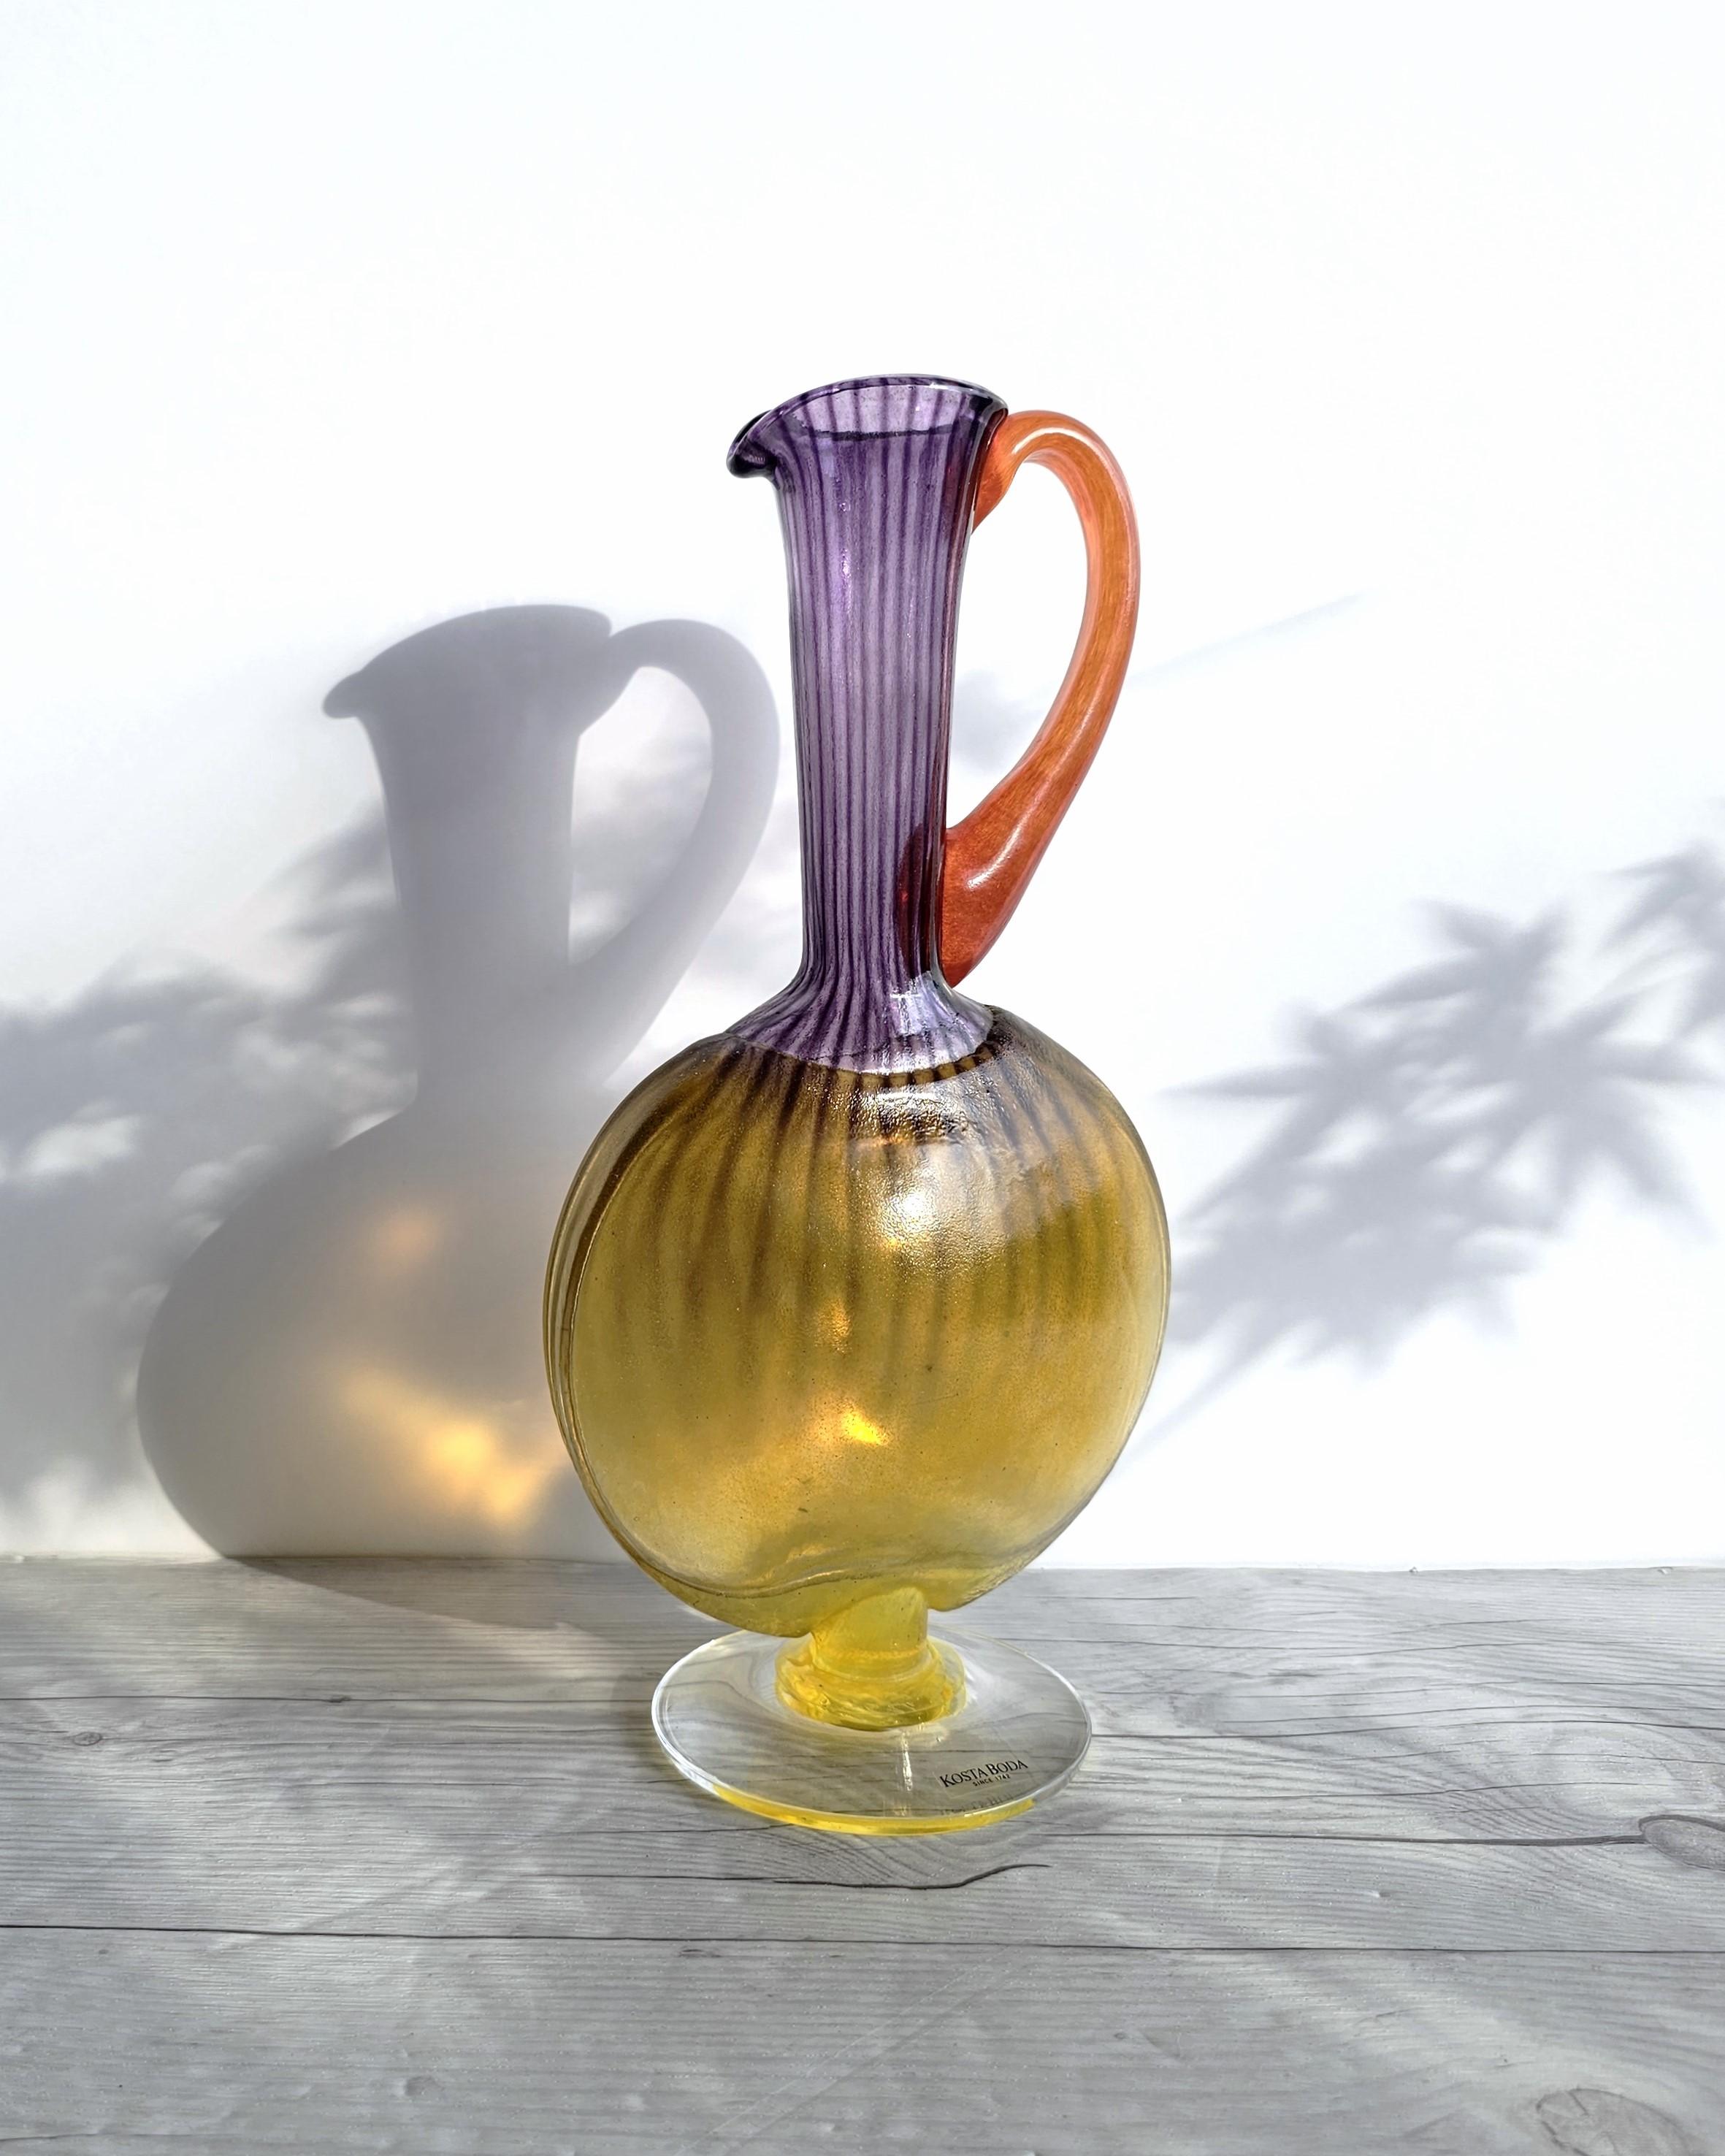 Art Glass Kjell Engman 1989 'Bon Bon' Series, Kosta Boda, Amethyst and Lemon Pitcher Vase